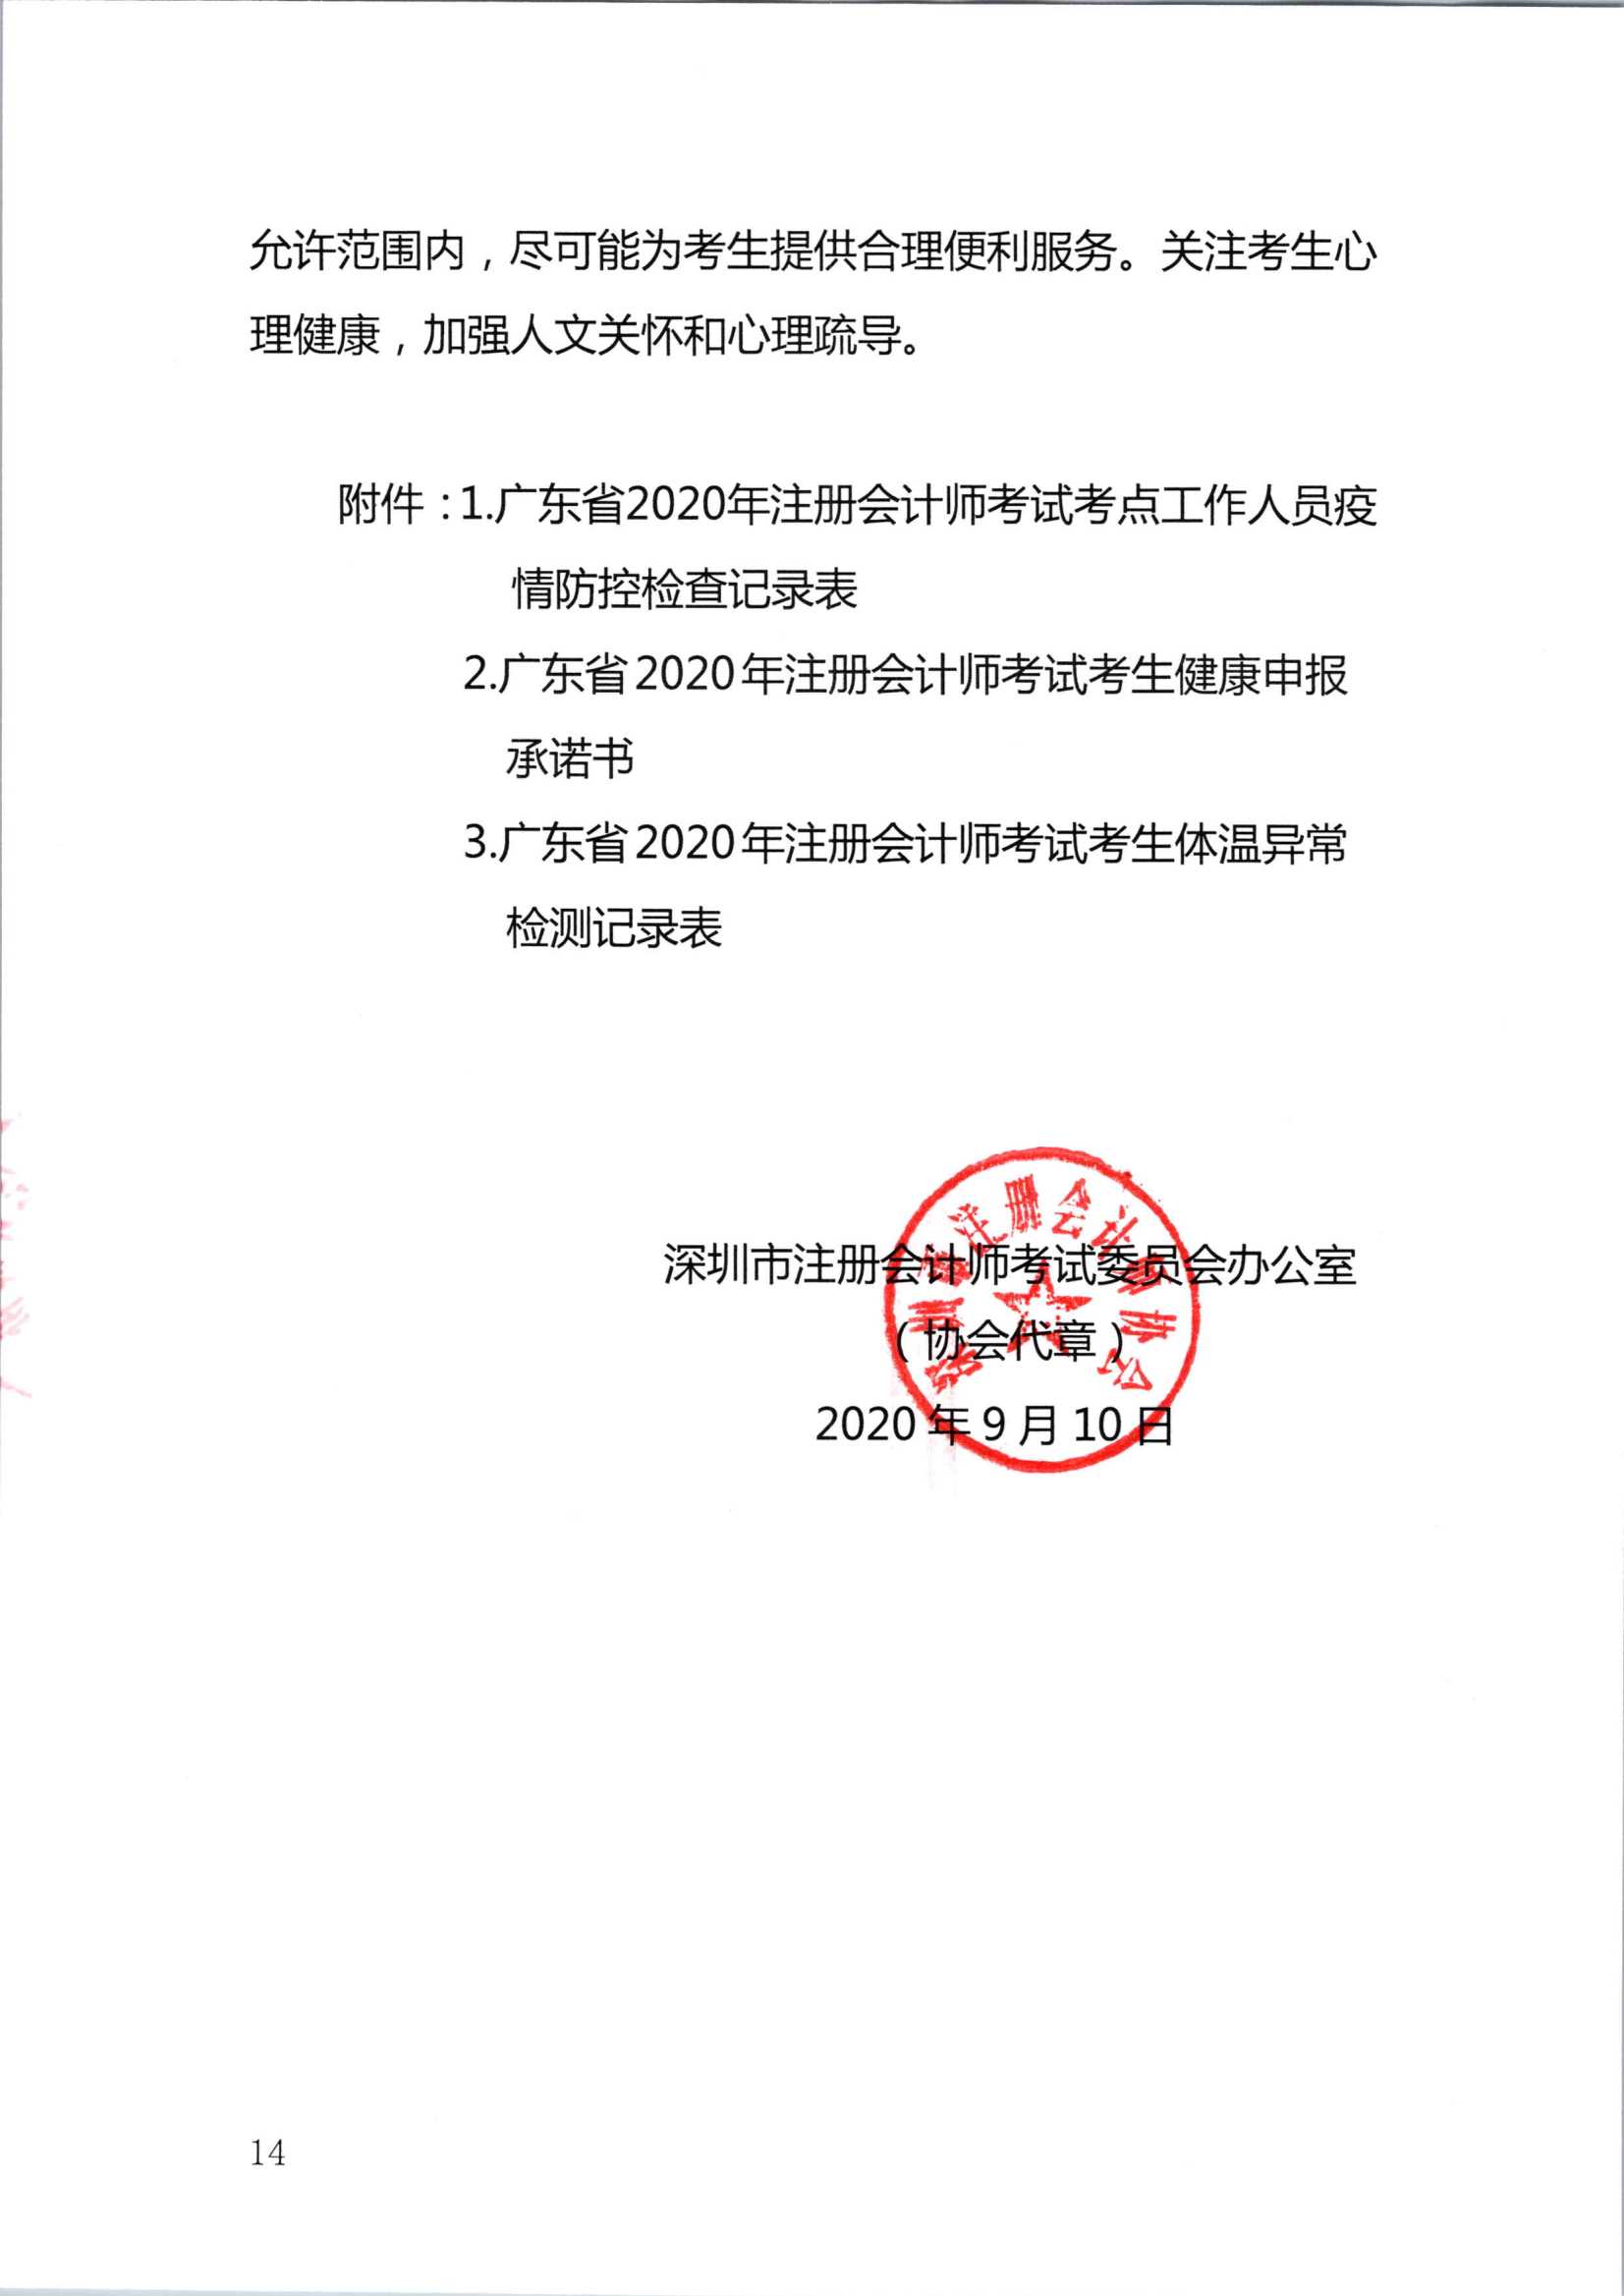 2020注册会计师全国统一考试深圳考区疫情防控工作方案_14.Png